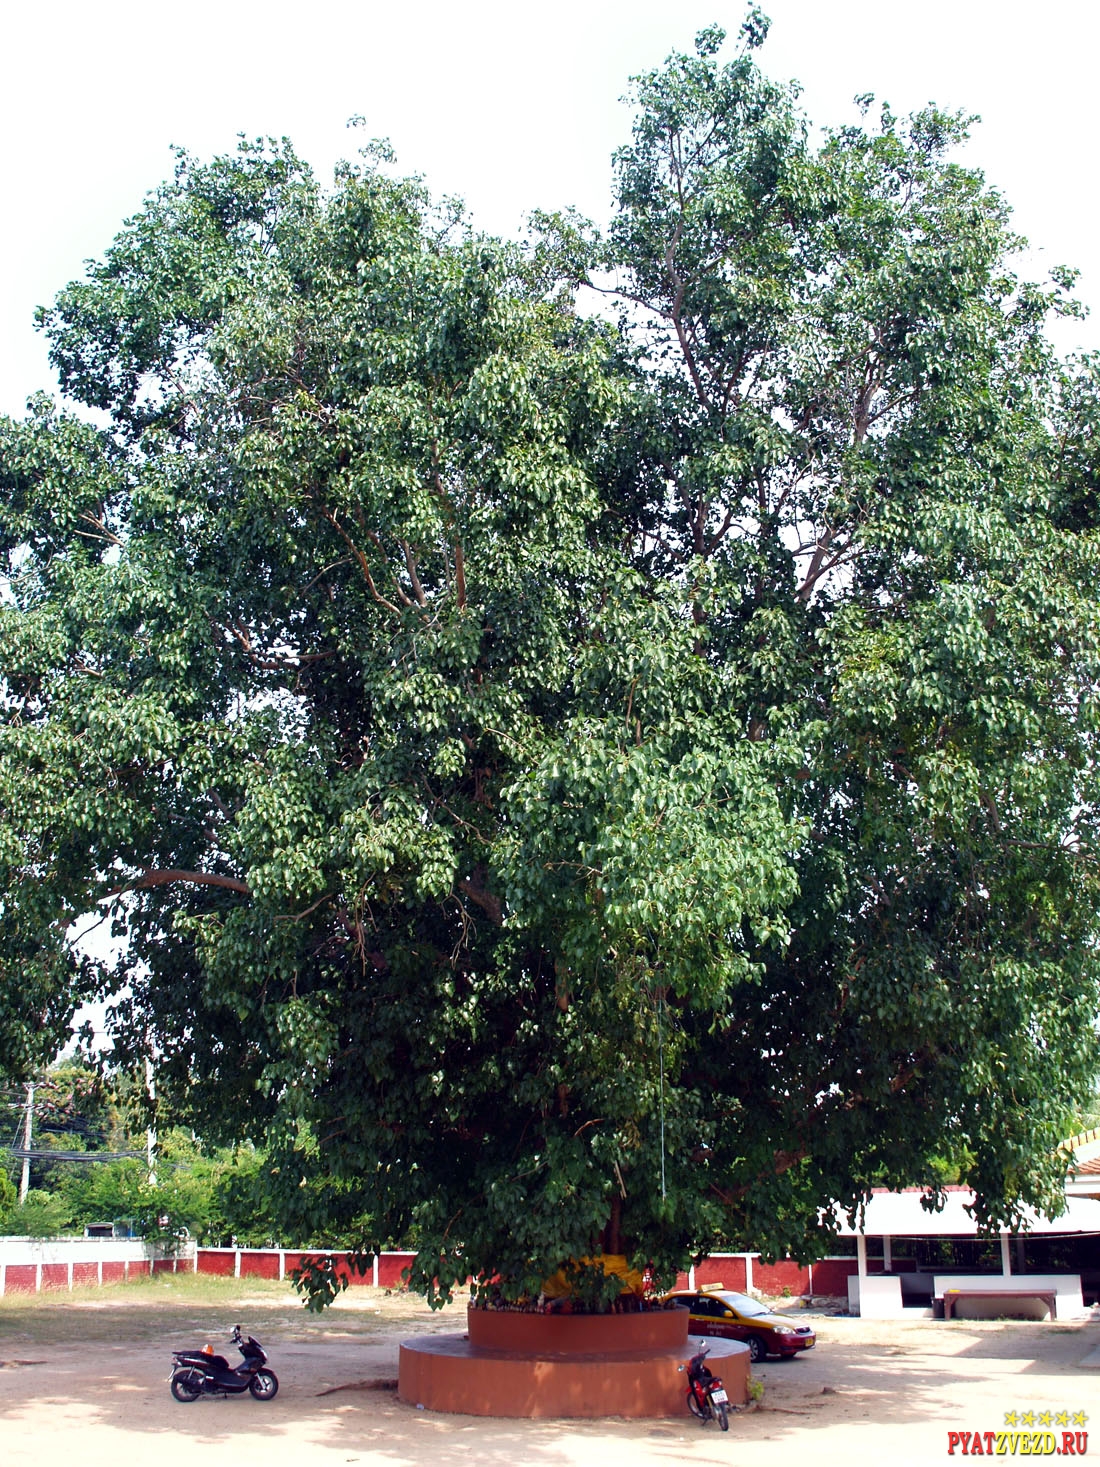 Дерево духов в храме